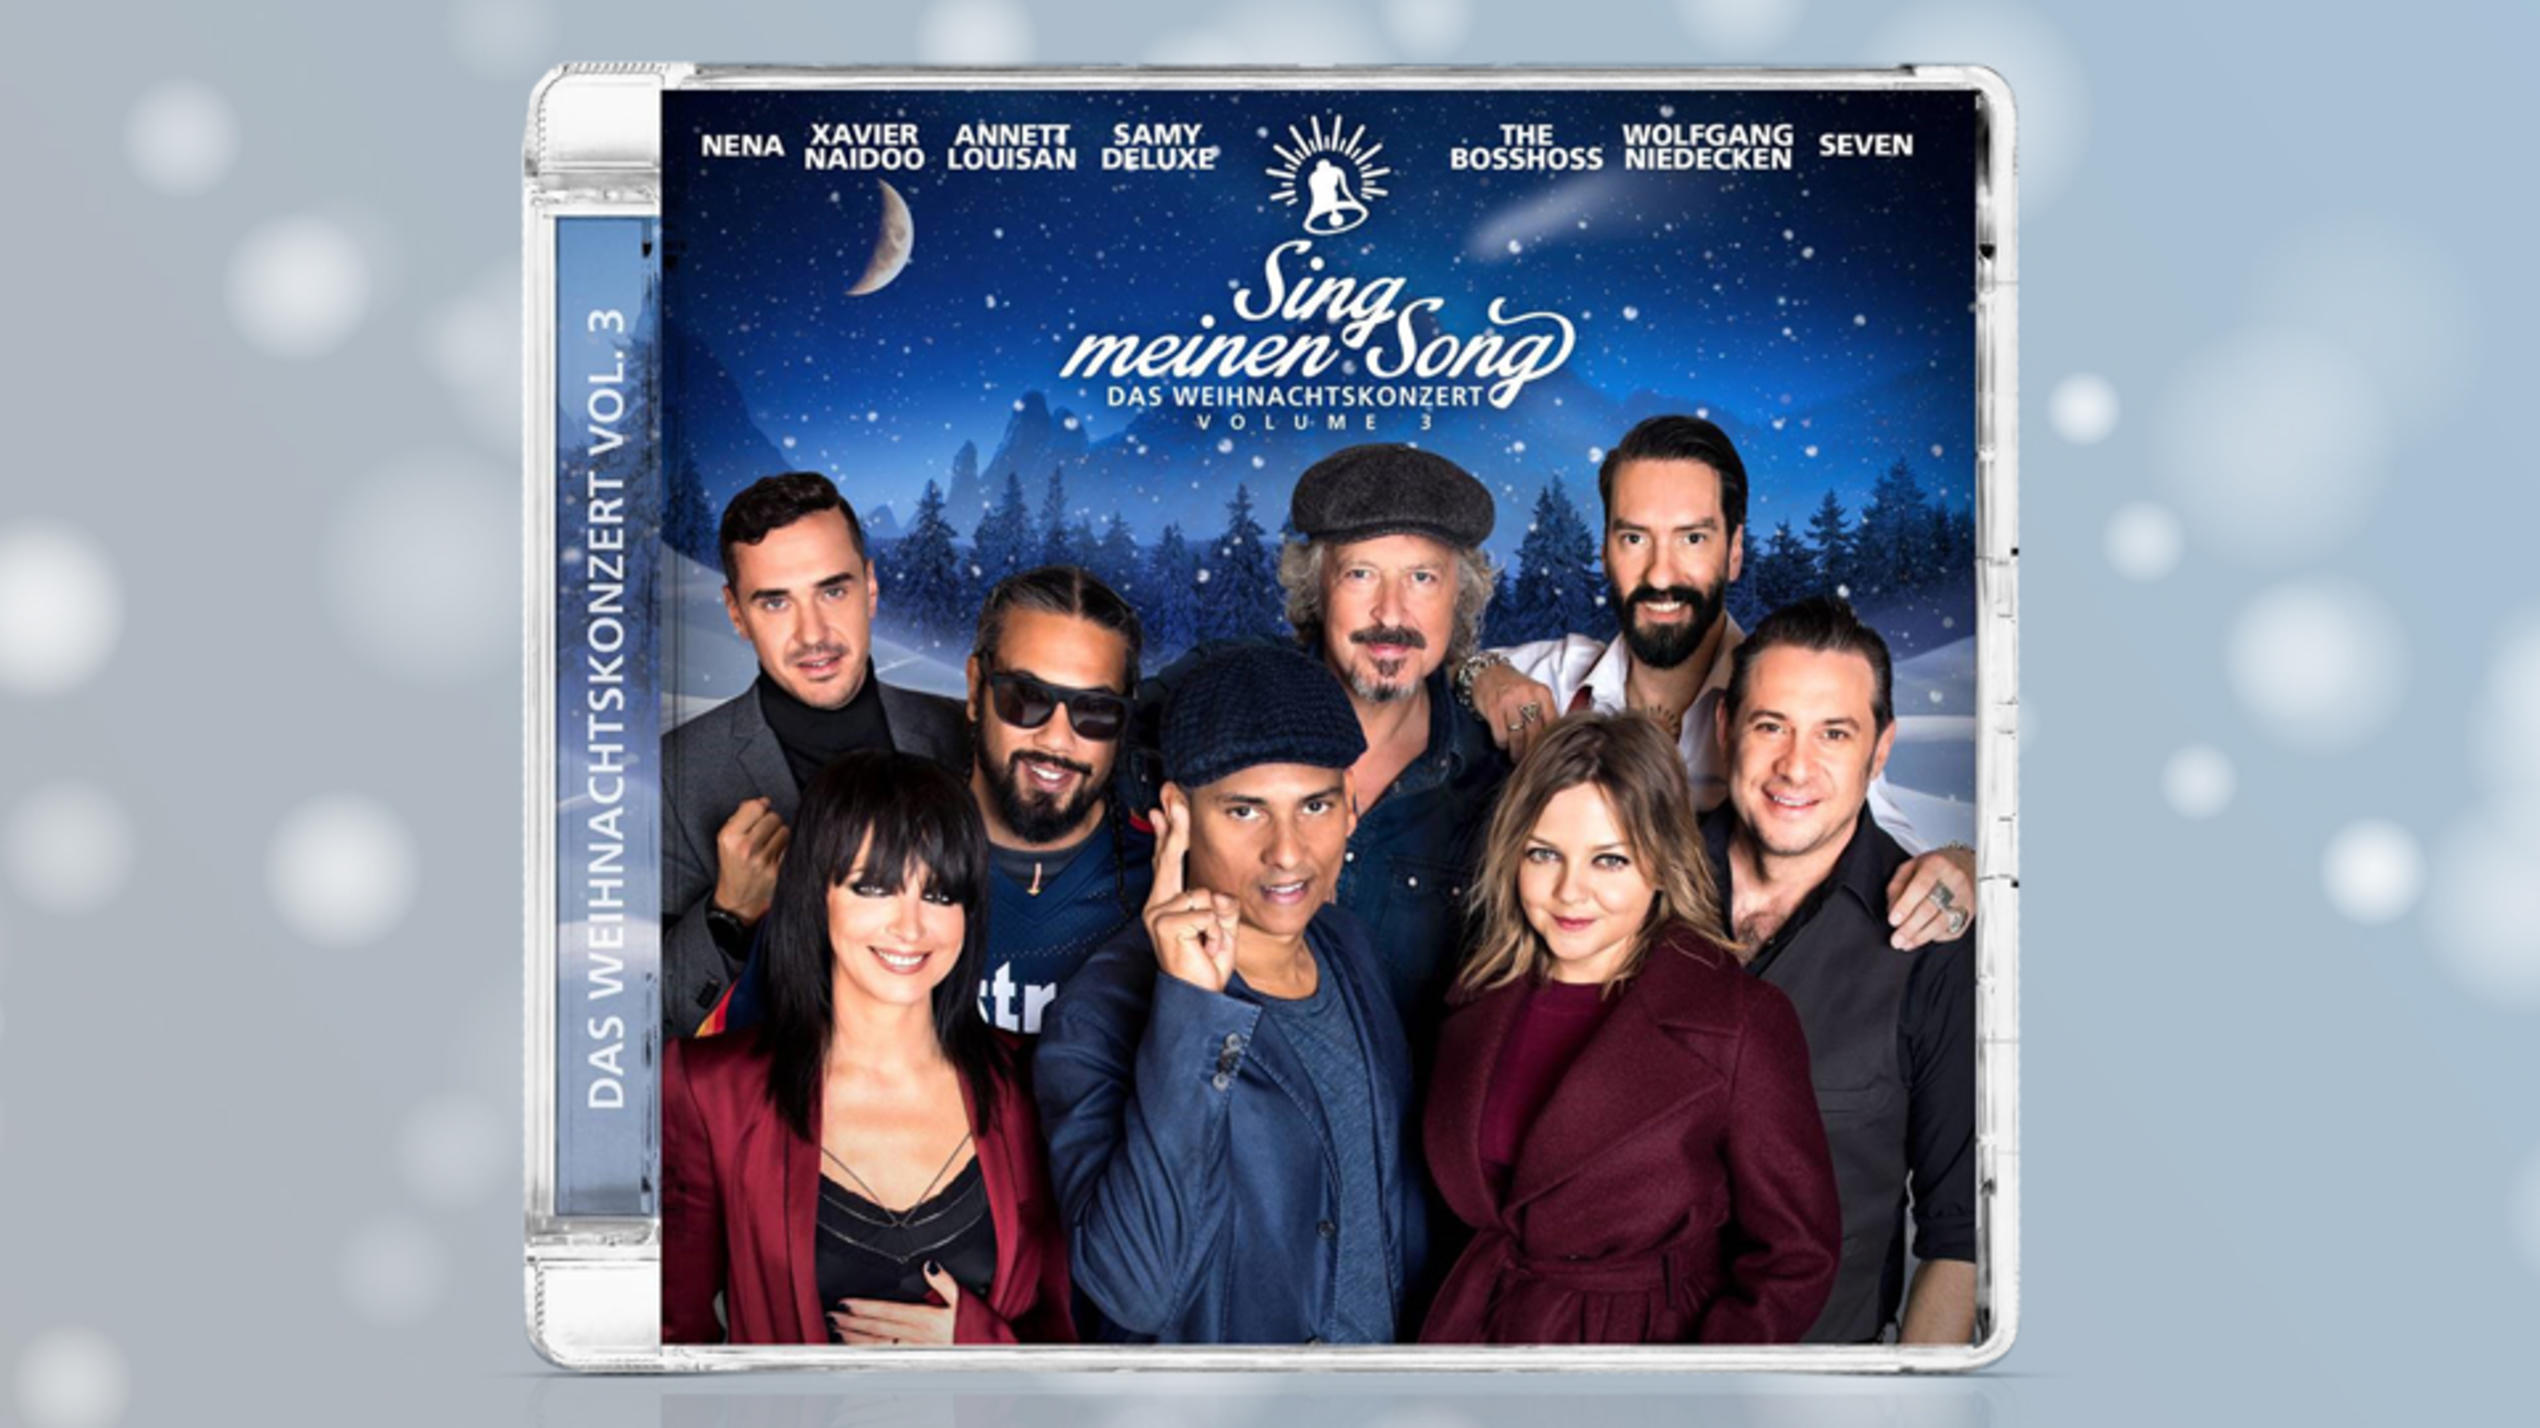 Das Album "Sing meinen Song - Das Weihnachtskonzert Vol.3" ist ab sofort erhältlich.